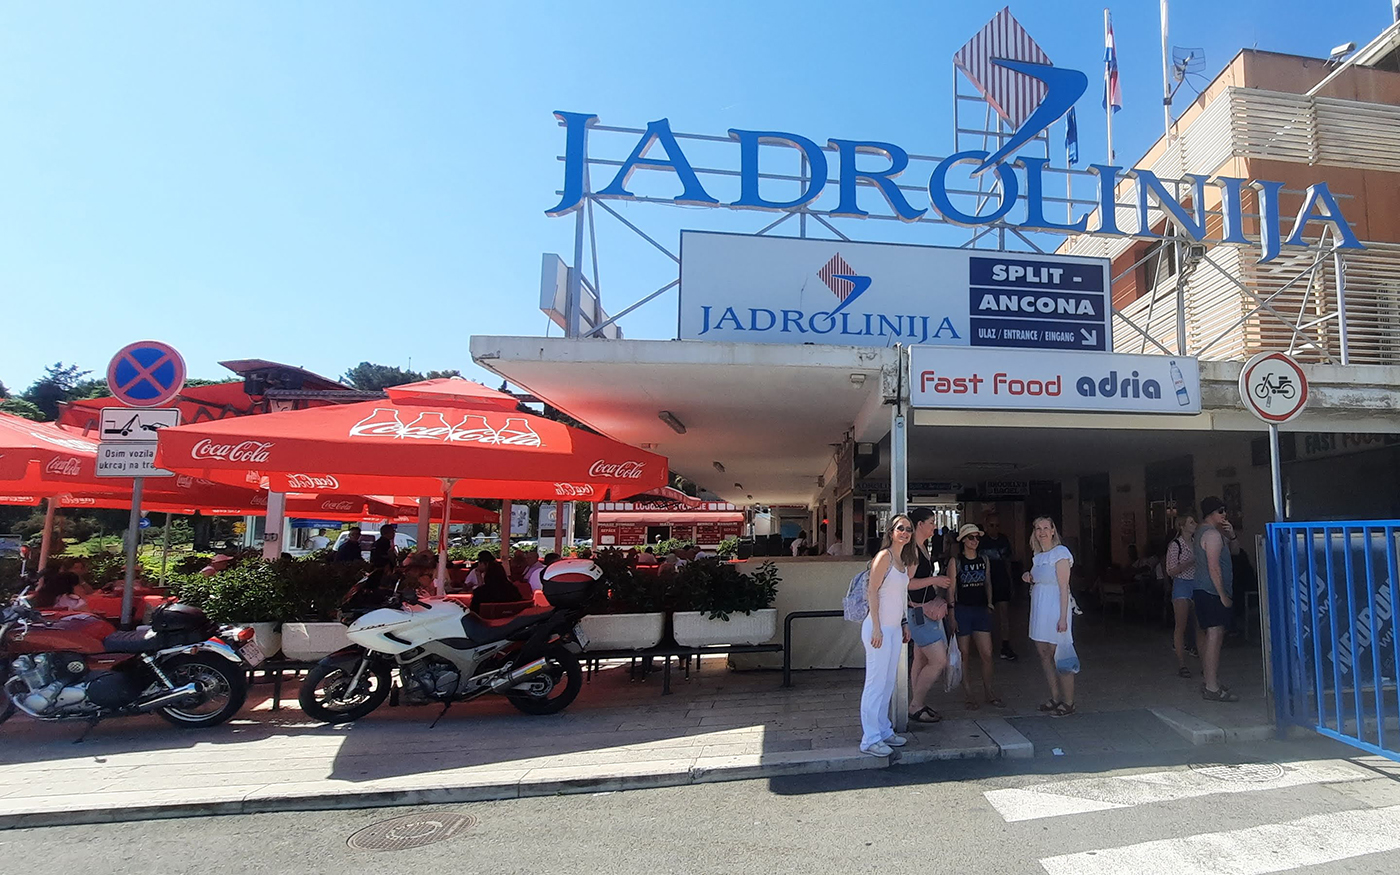 Ferries Jadrolinija en el puerto de Split